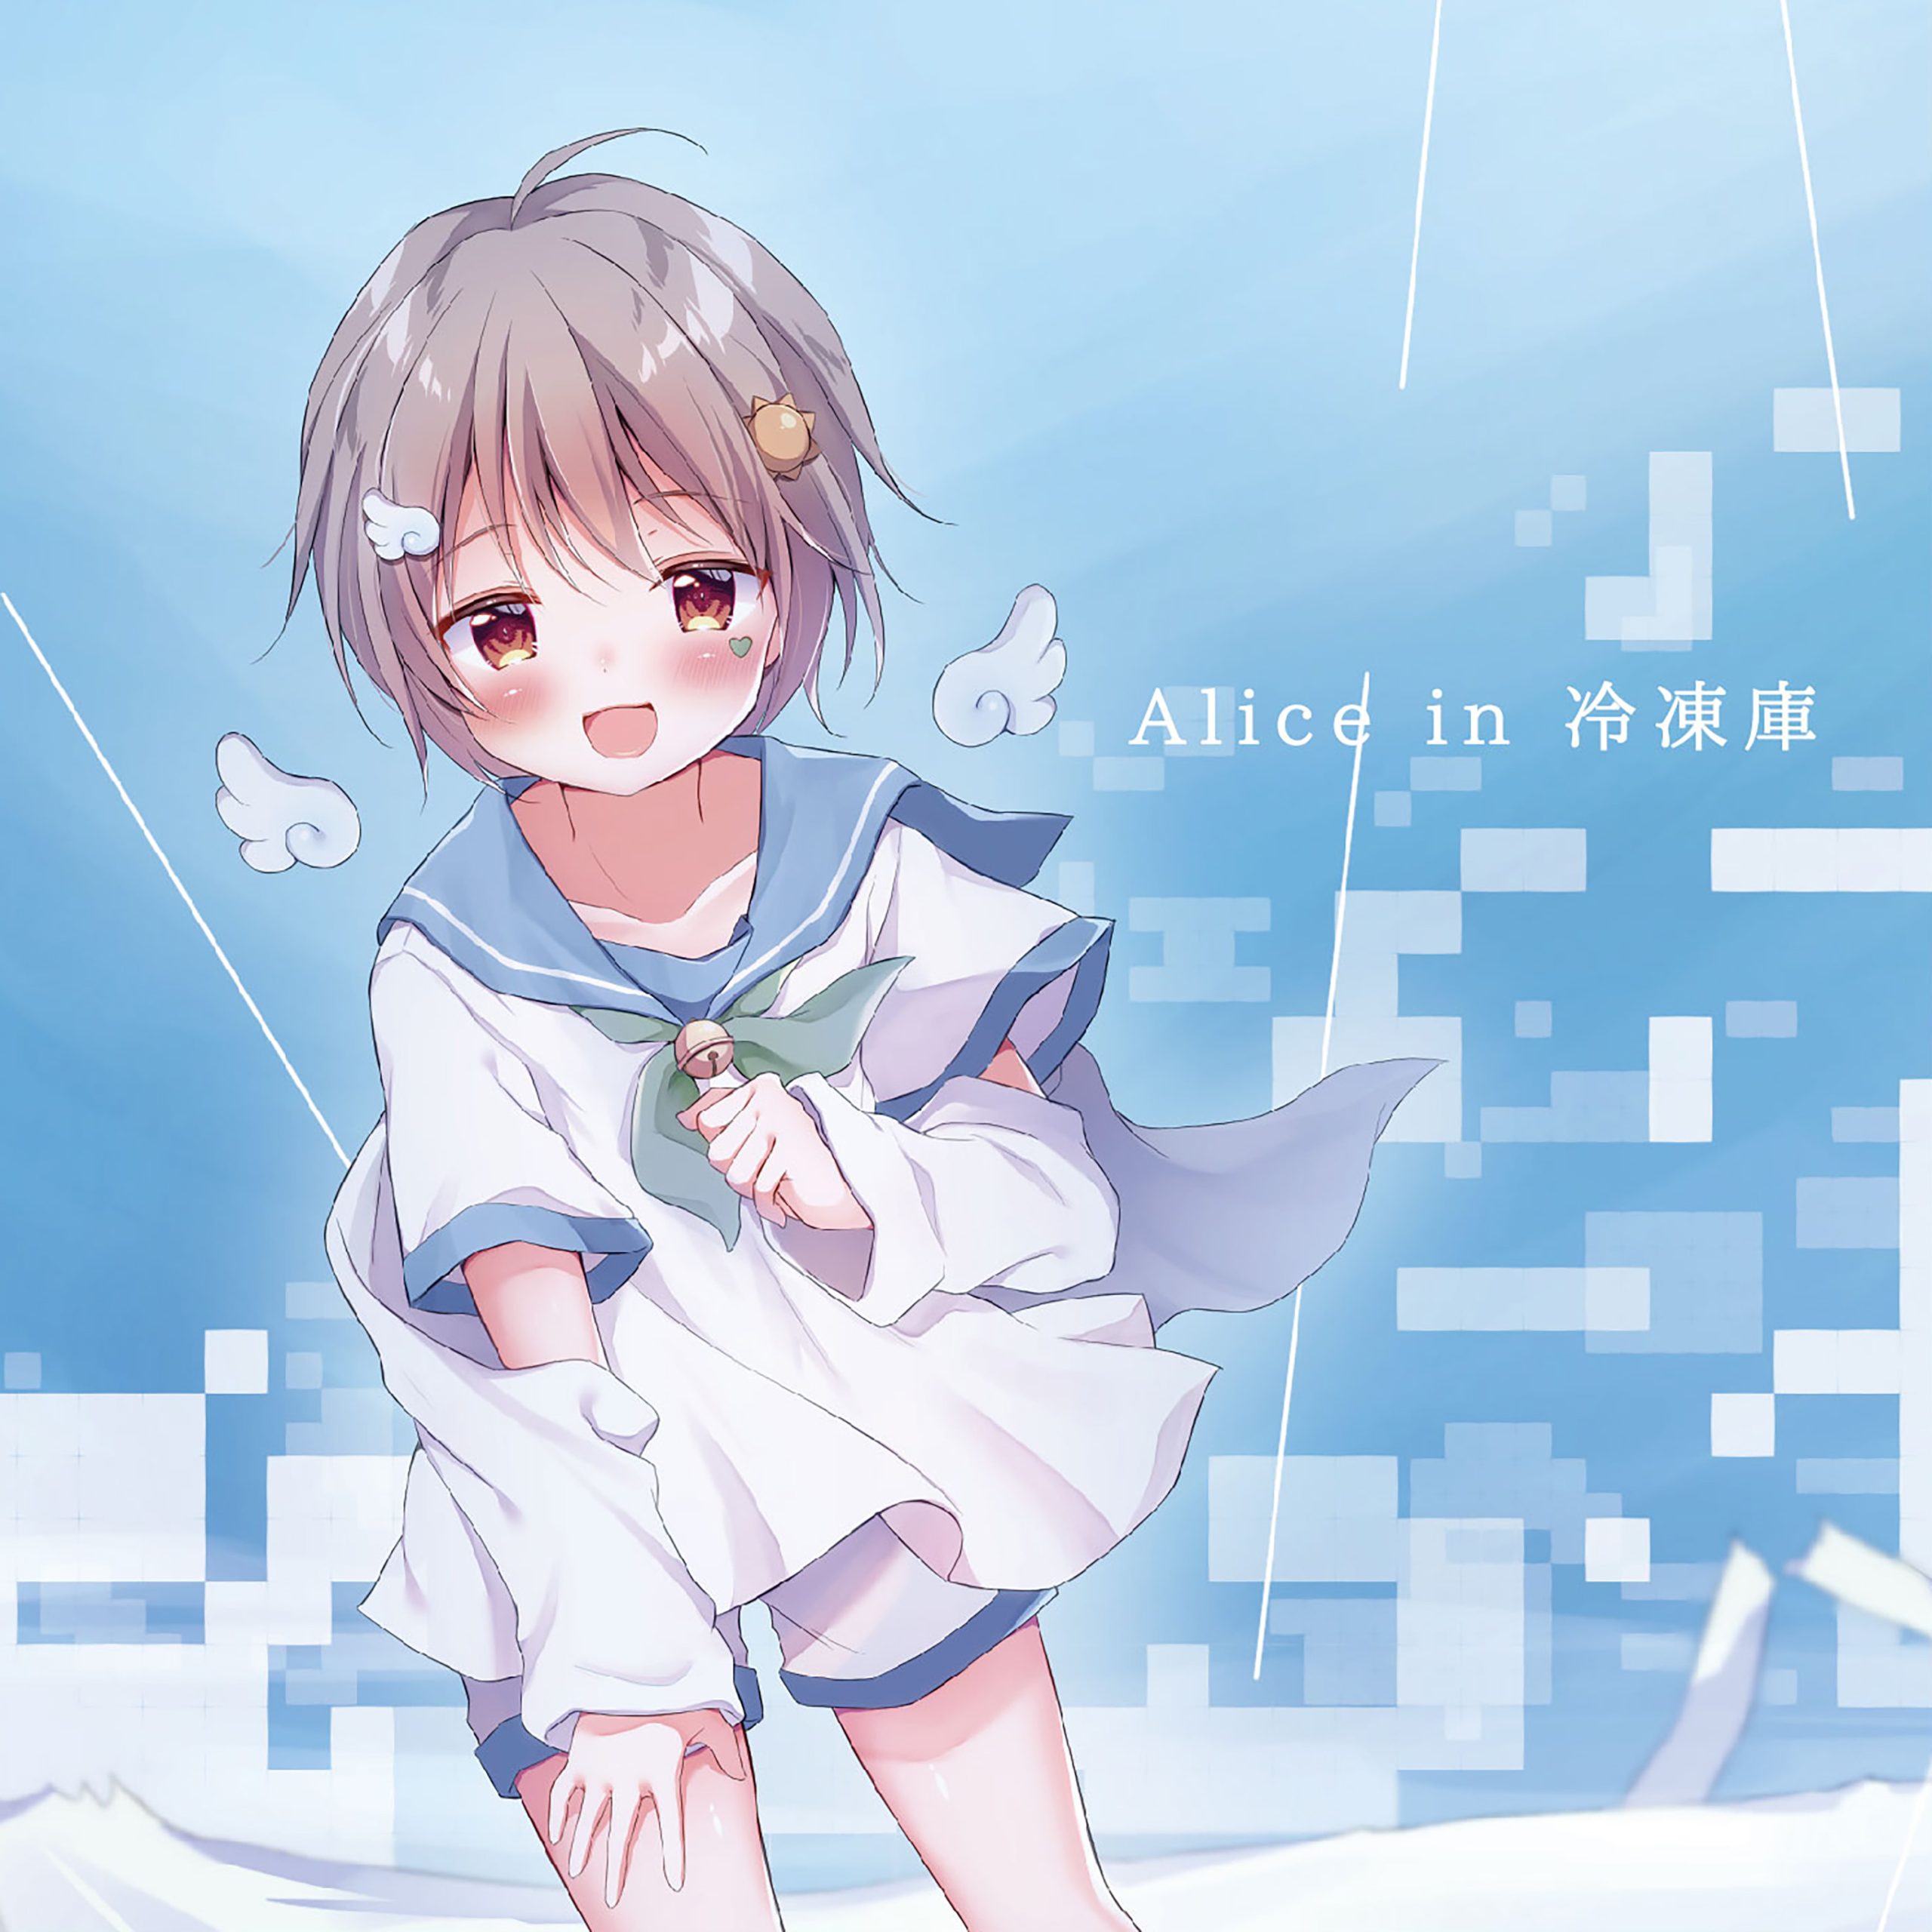 Alice in 冷凍庫(晴風えそら Cover Ver.) / 晴風えそら